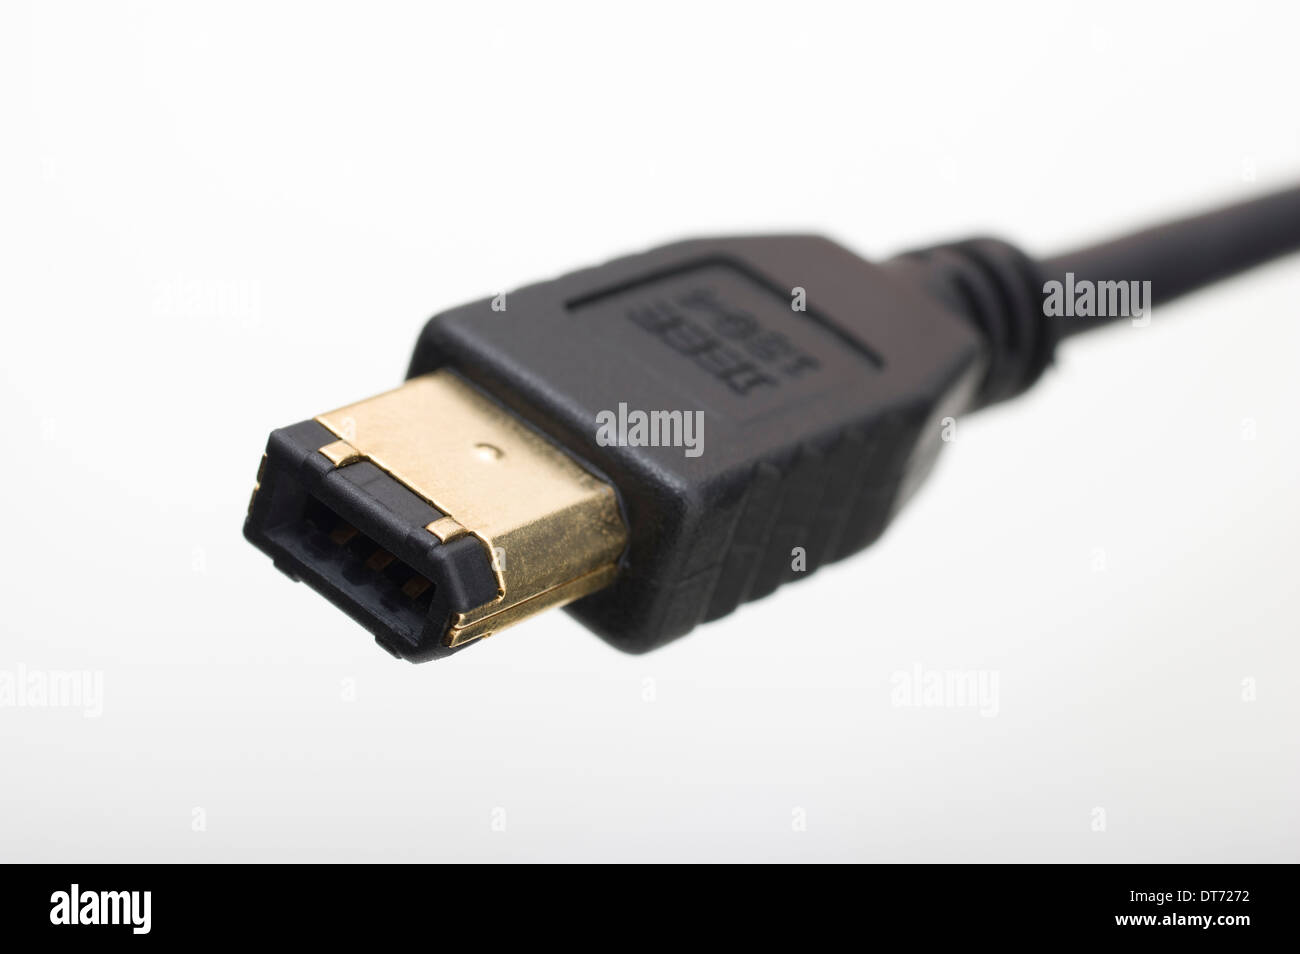 6-Pin FireWire 400 IEEE 1394-1995-Kabel Stockfotografie - Alamy